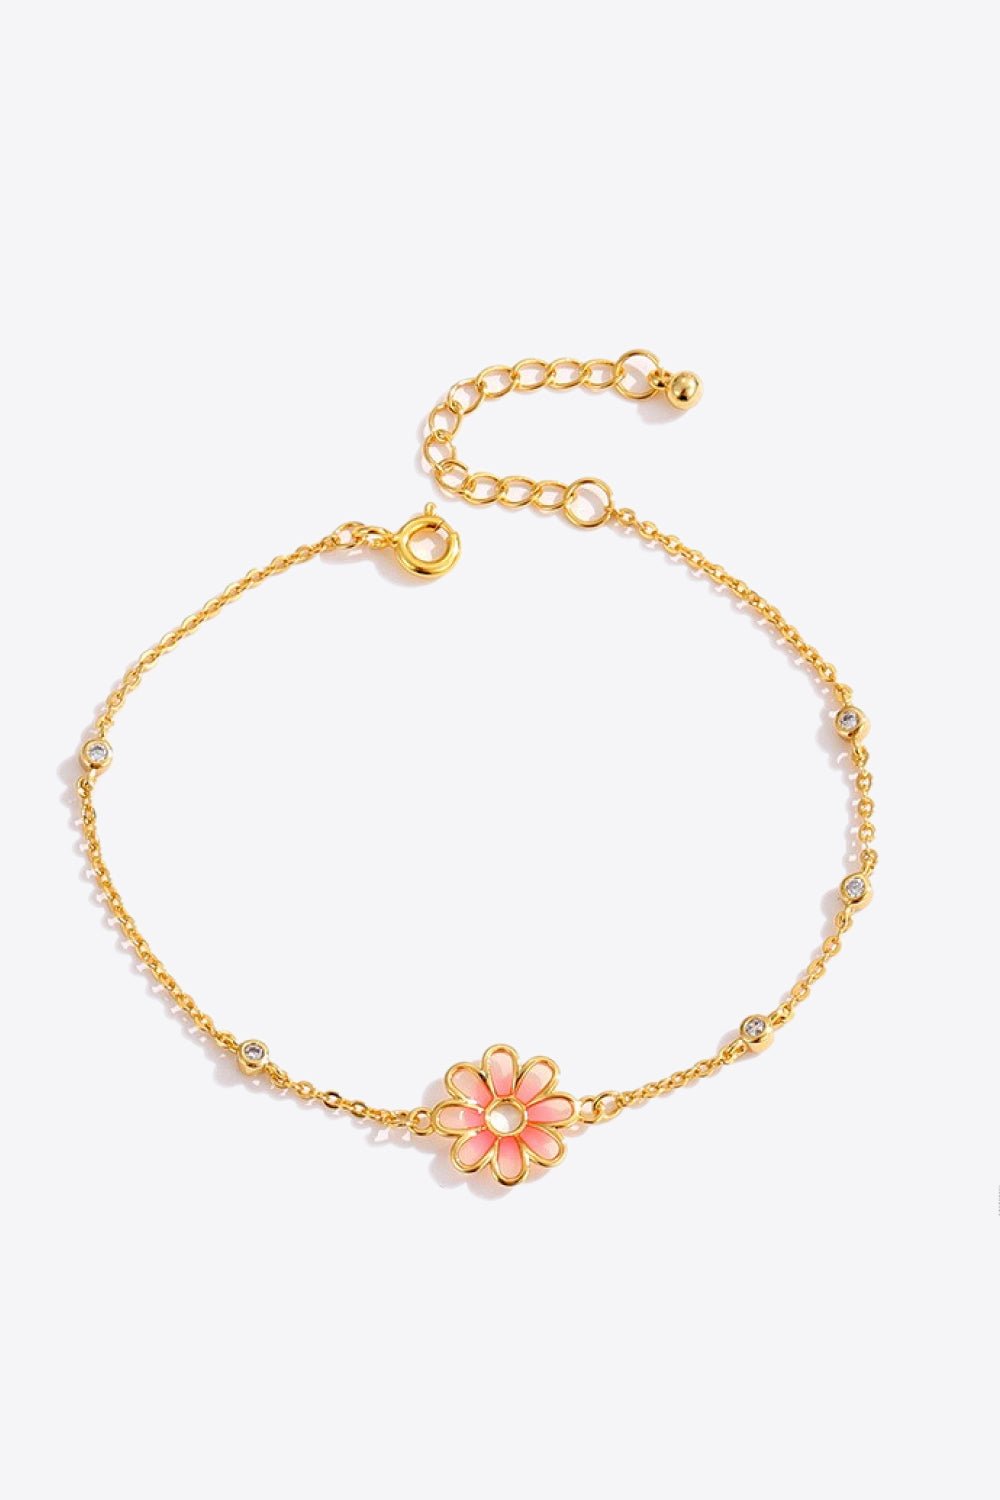 Flower Chain Bracelet - Shah S. Sahota